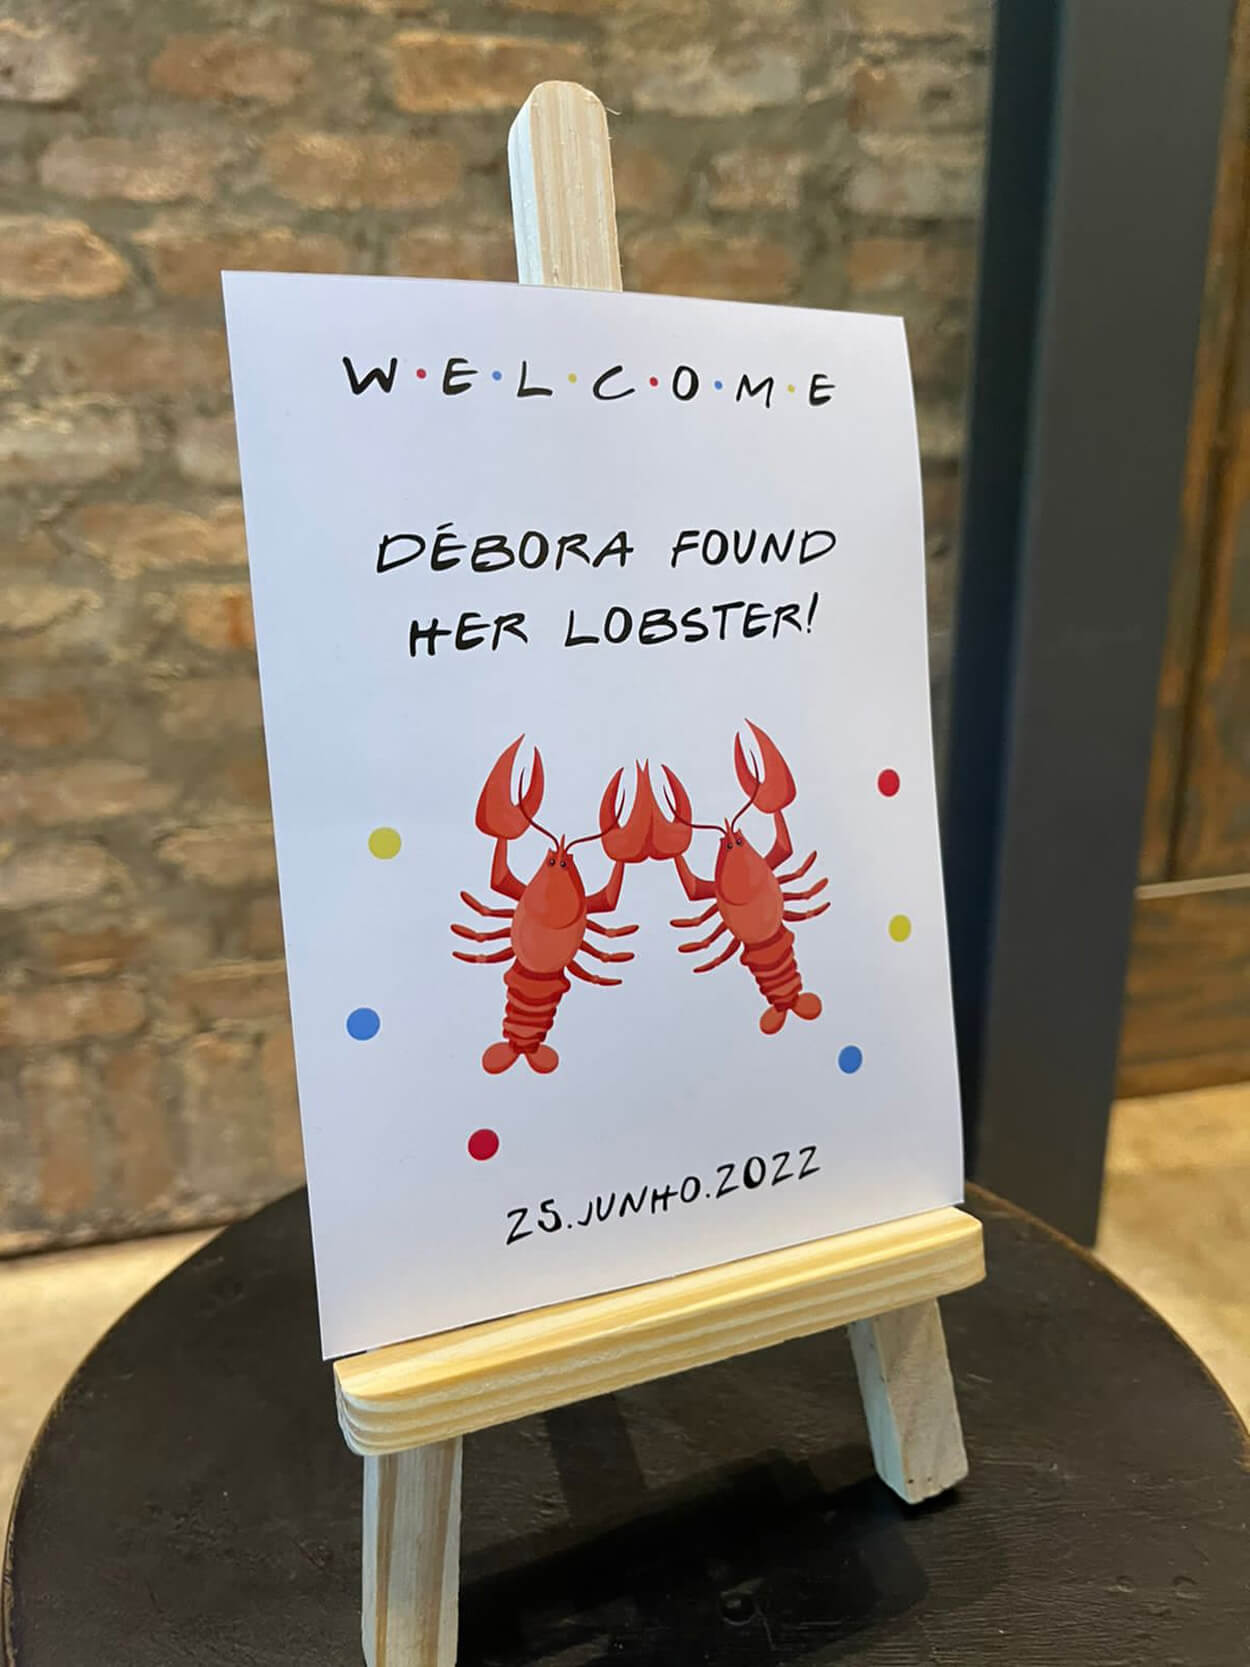 Plaquinha de boas vindas com lagostas desenhadas com referências de friends